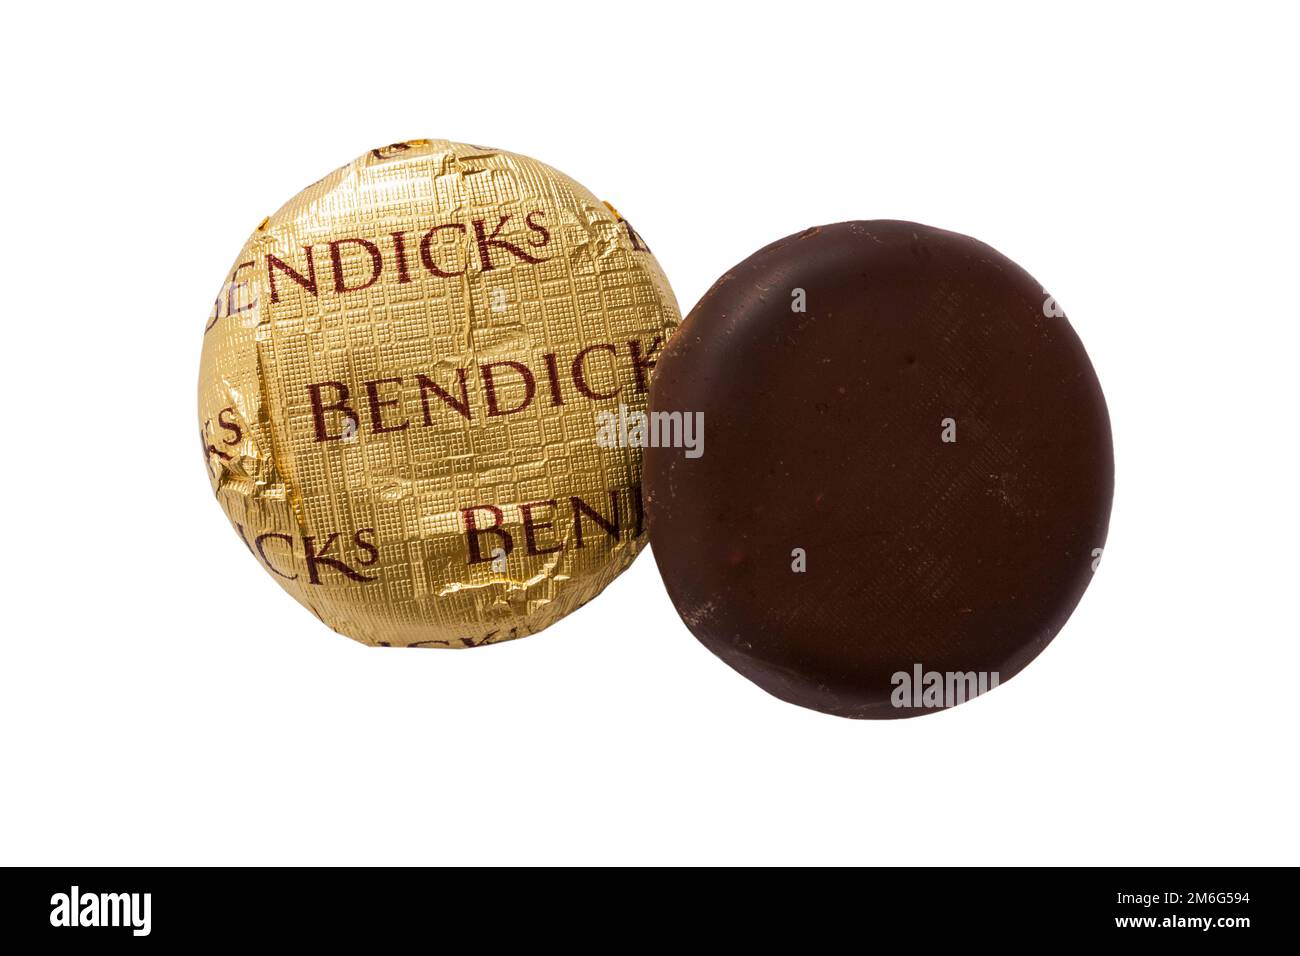 Deux fondants à la menthe Bendicks, un non emballé, isolé sur fond blanc - crèmes à la menthe poivrée couvertes de chocolat noir riche Banque D'Images